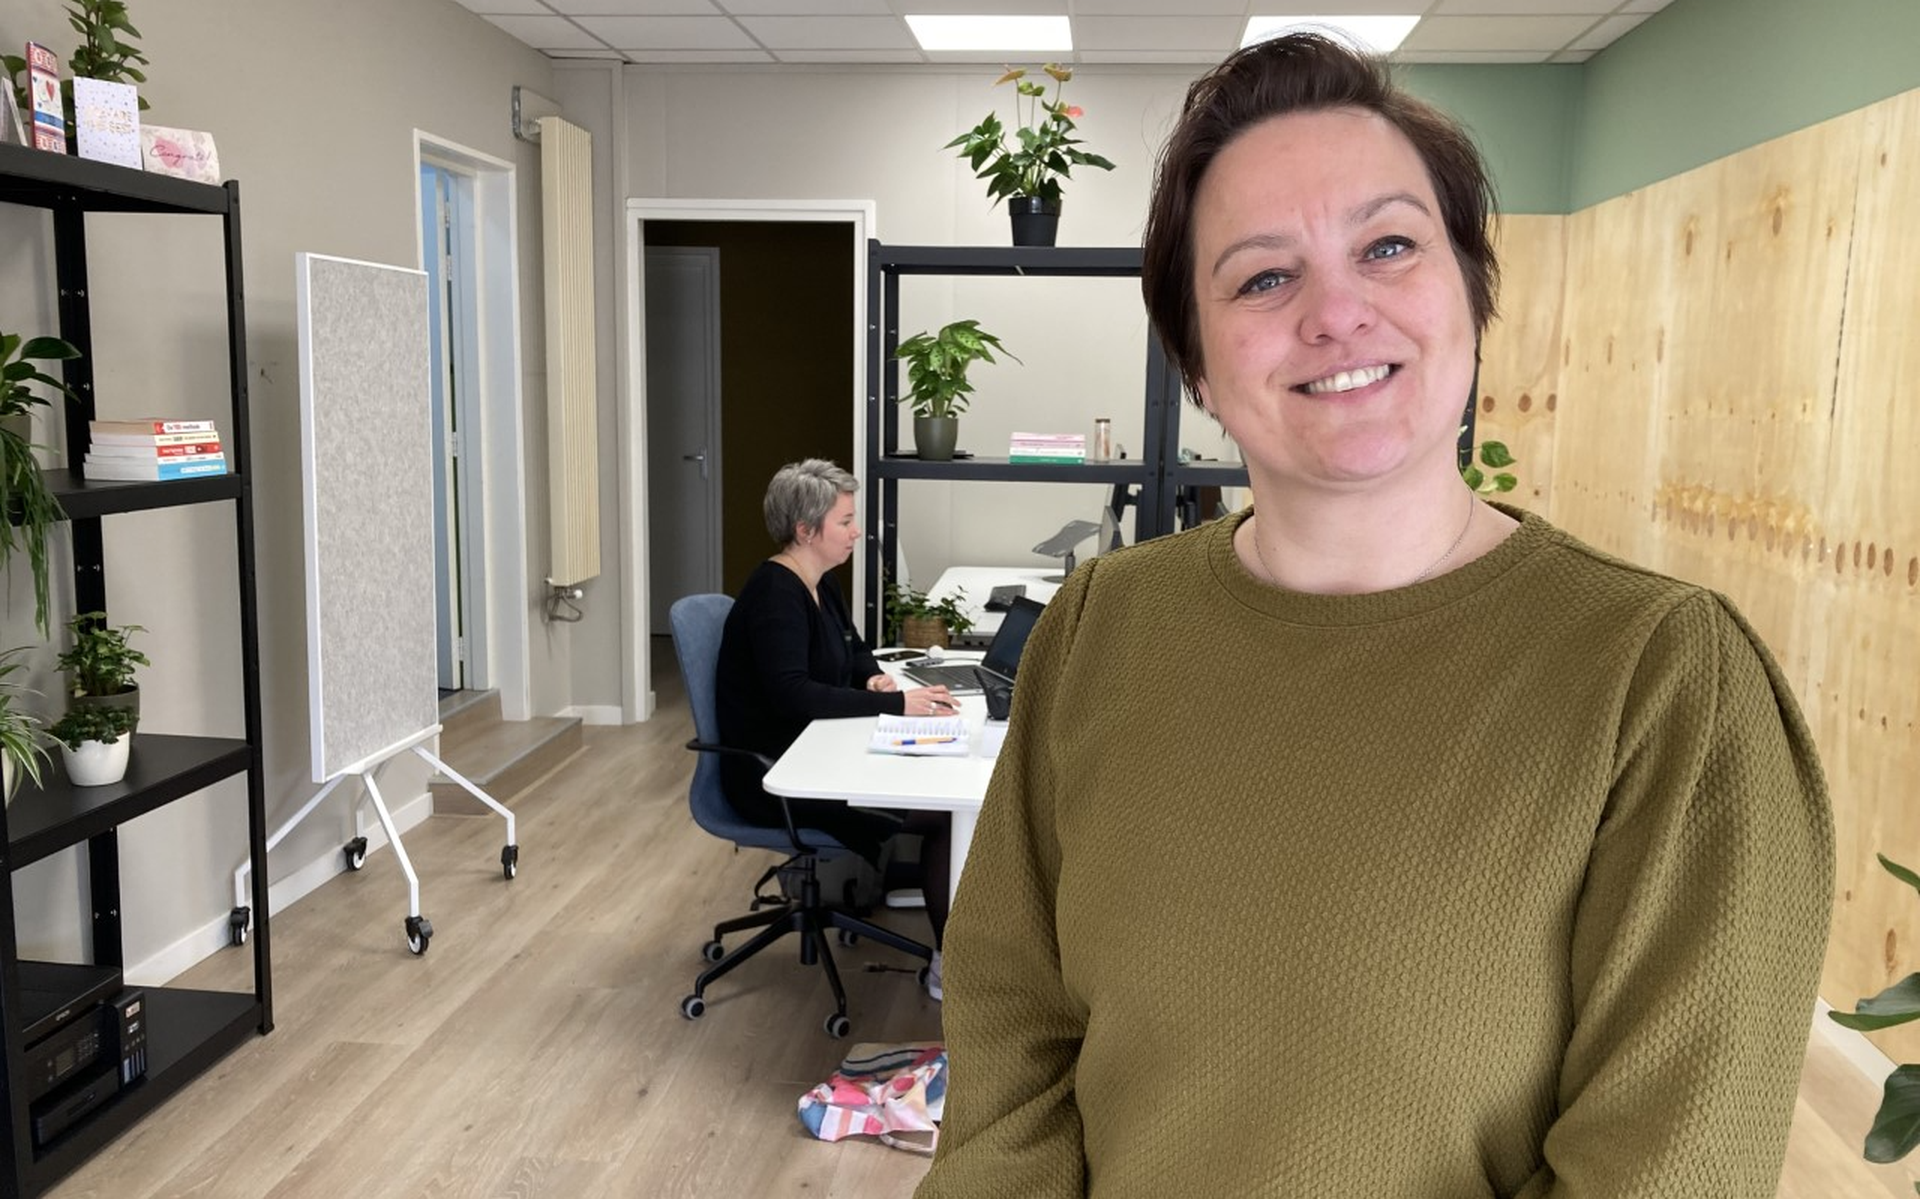 Eigenaresse Anita Jakobs van het nieuwe bedrijf Plek! dat in het centrum van Zuidhorn ruimte biedt aan zzp’ers uit het Westerkwartier. 